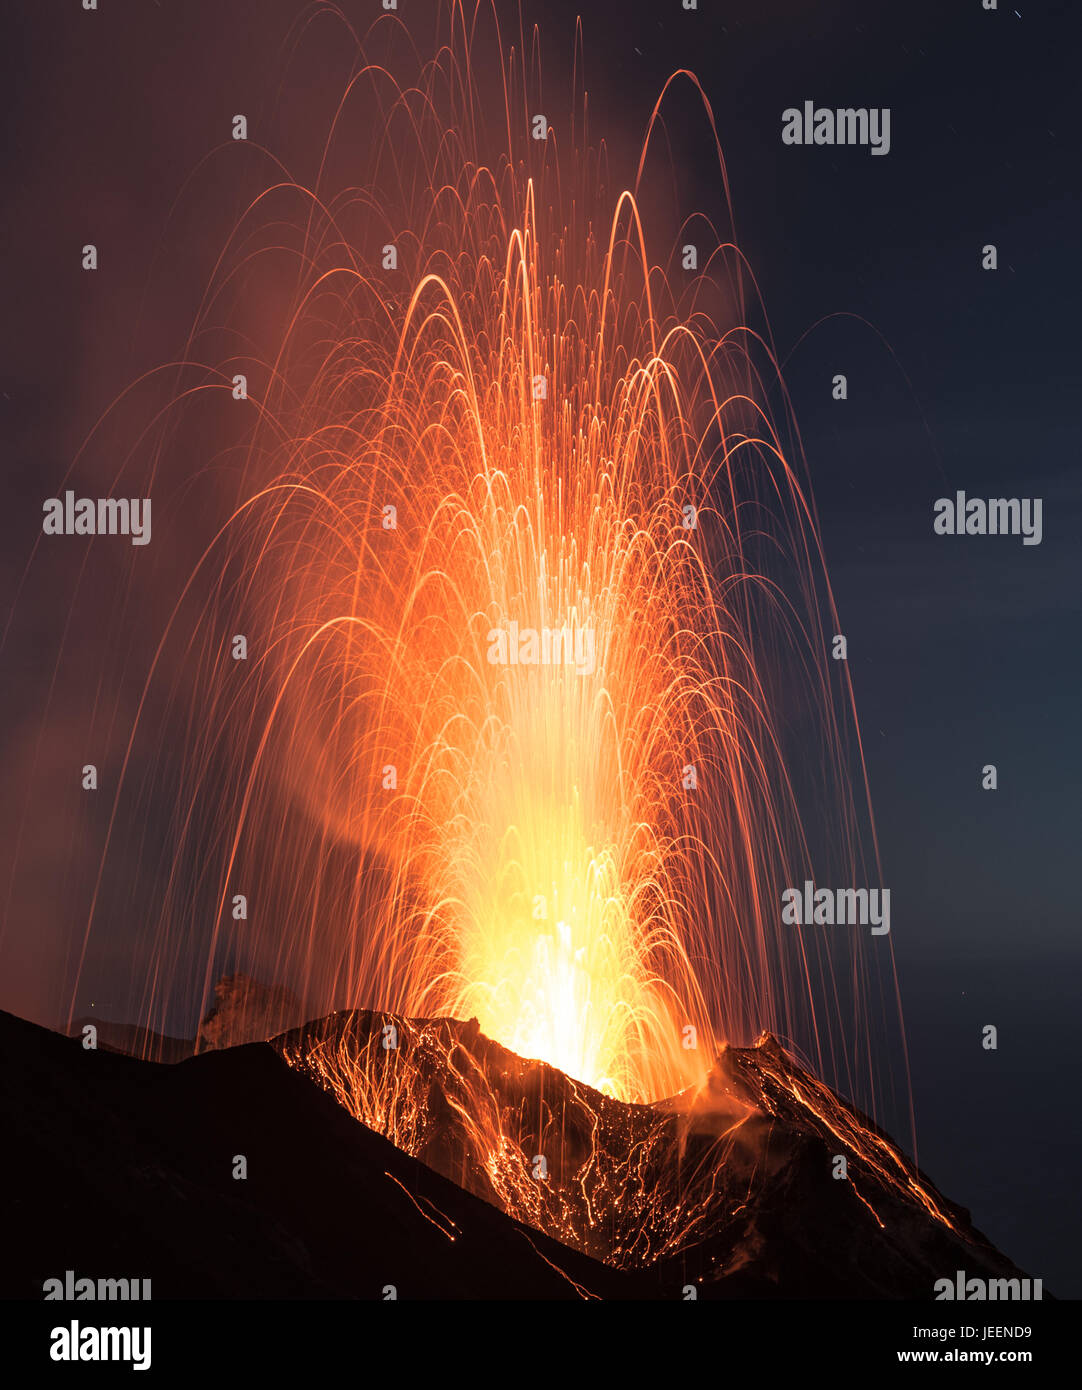 Stromboliane forte eruzione vulcanica dal vulcano di Stromboli (Isole Eolie Lipari, Italia) di notte, crateri illuminati dalla luna, Giugno 2017 Foto Stock